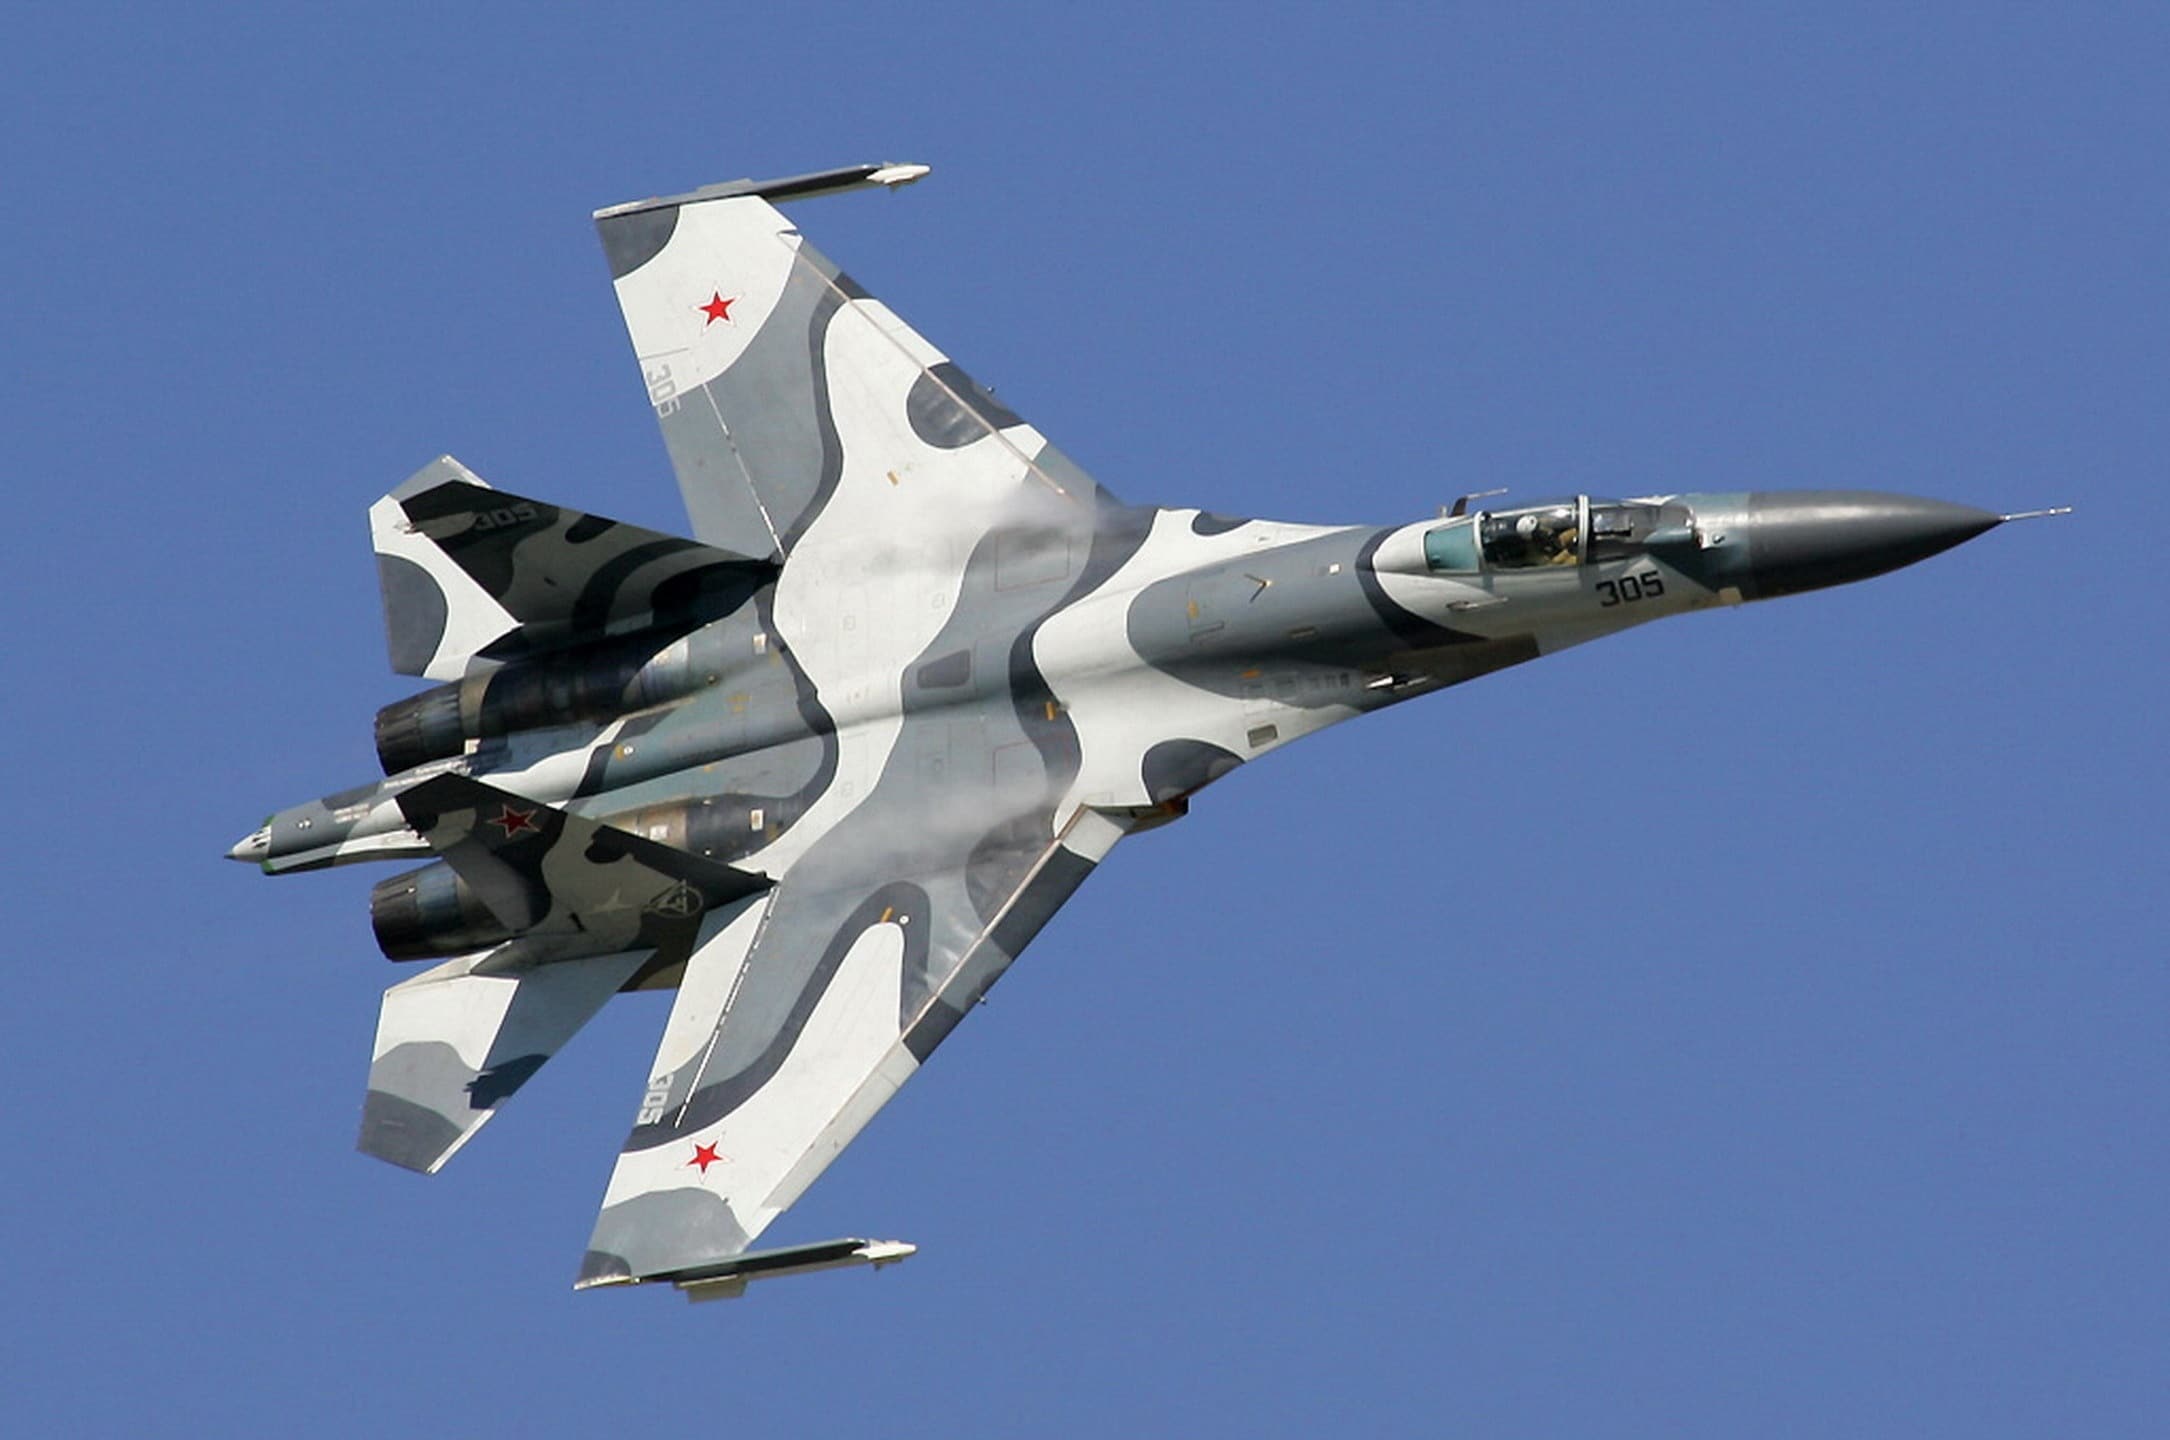 طائرات مقاتلة روسية من طراز Su-27 تعترض طائرة استطلاع أمريكية طراز RC-135